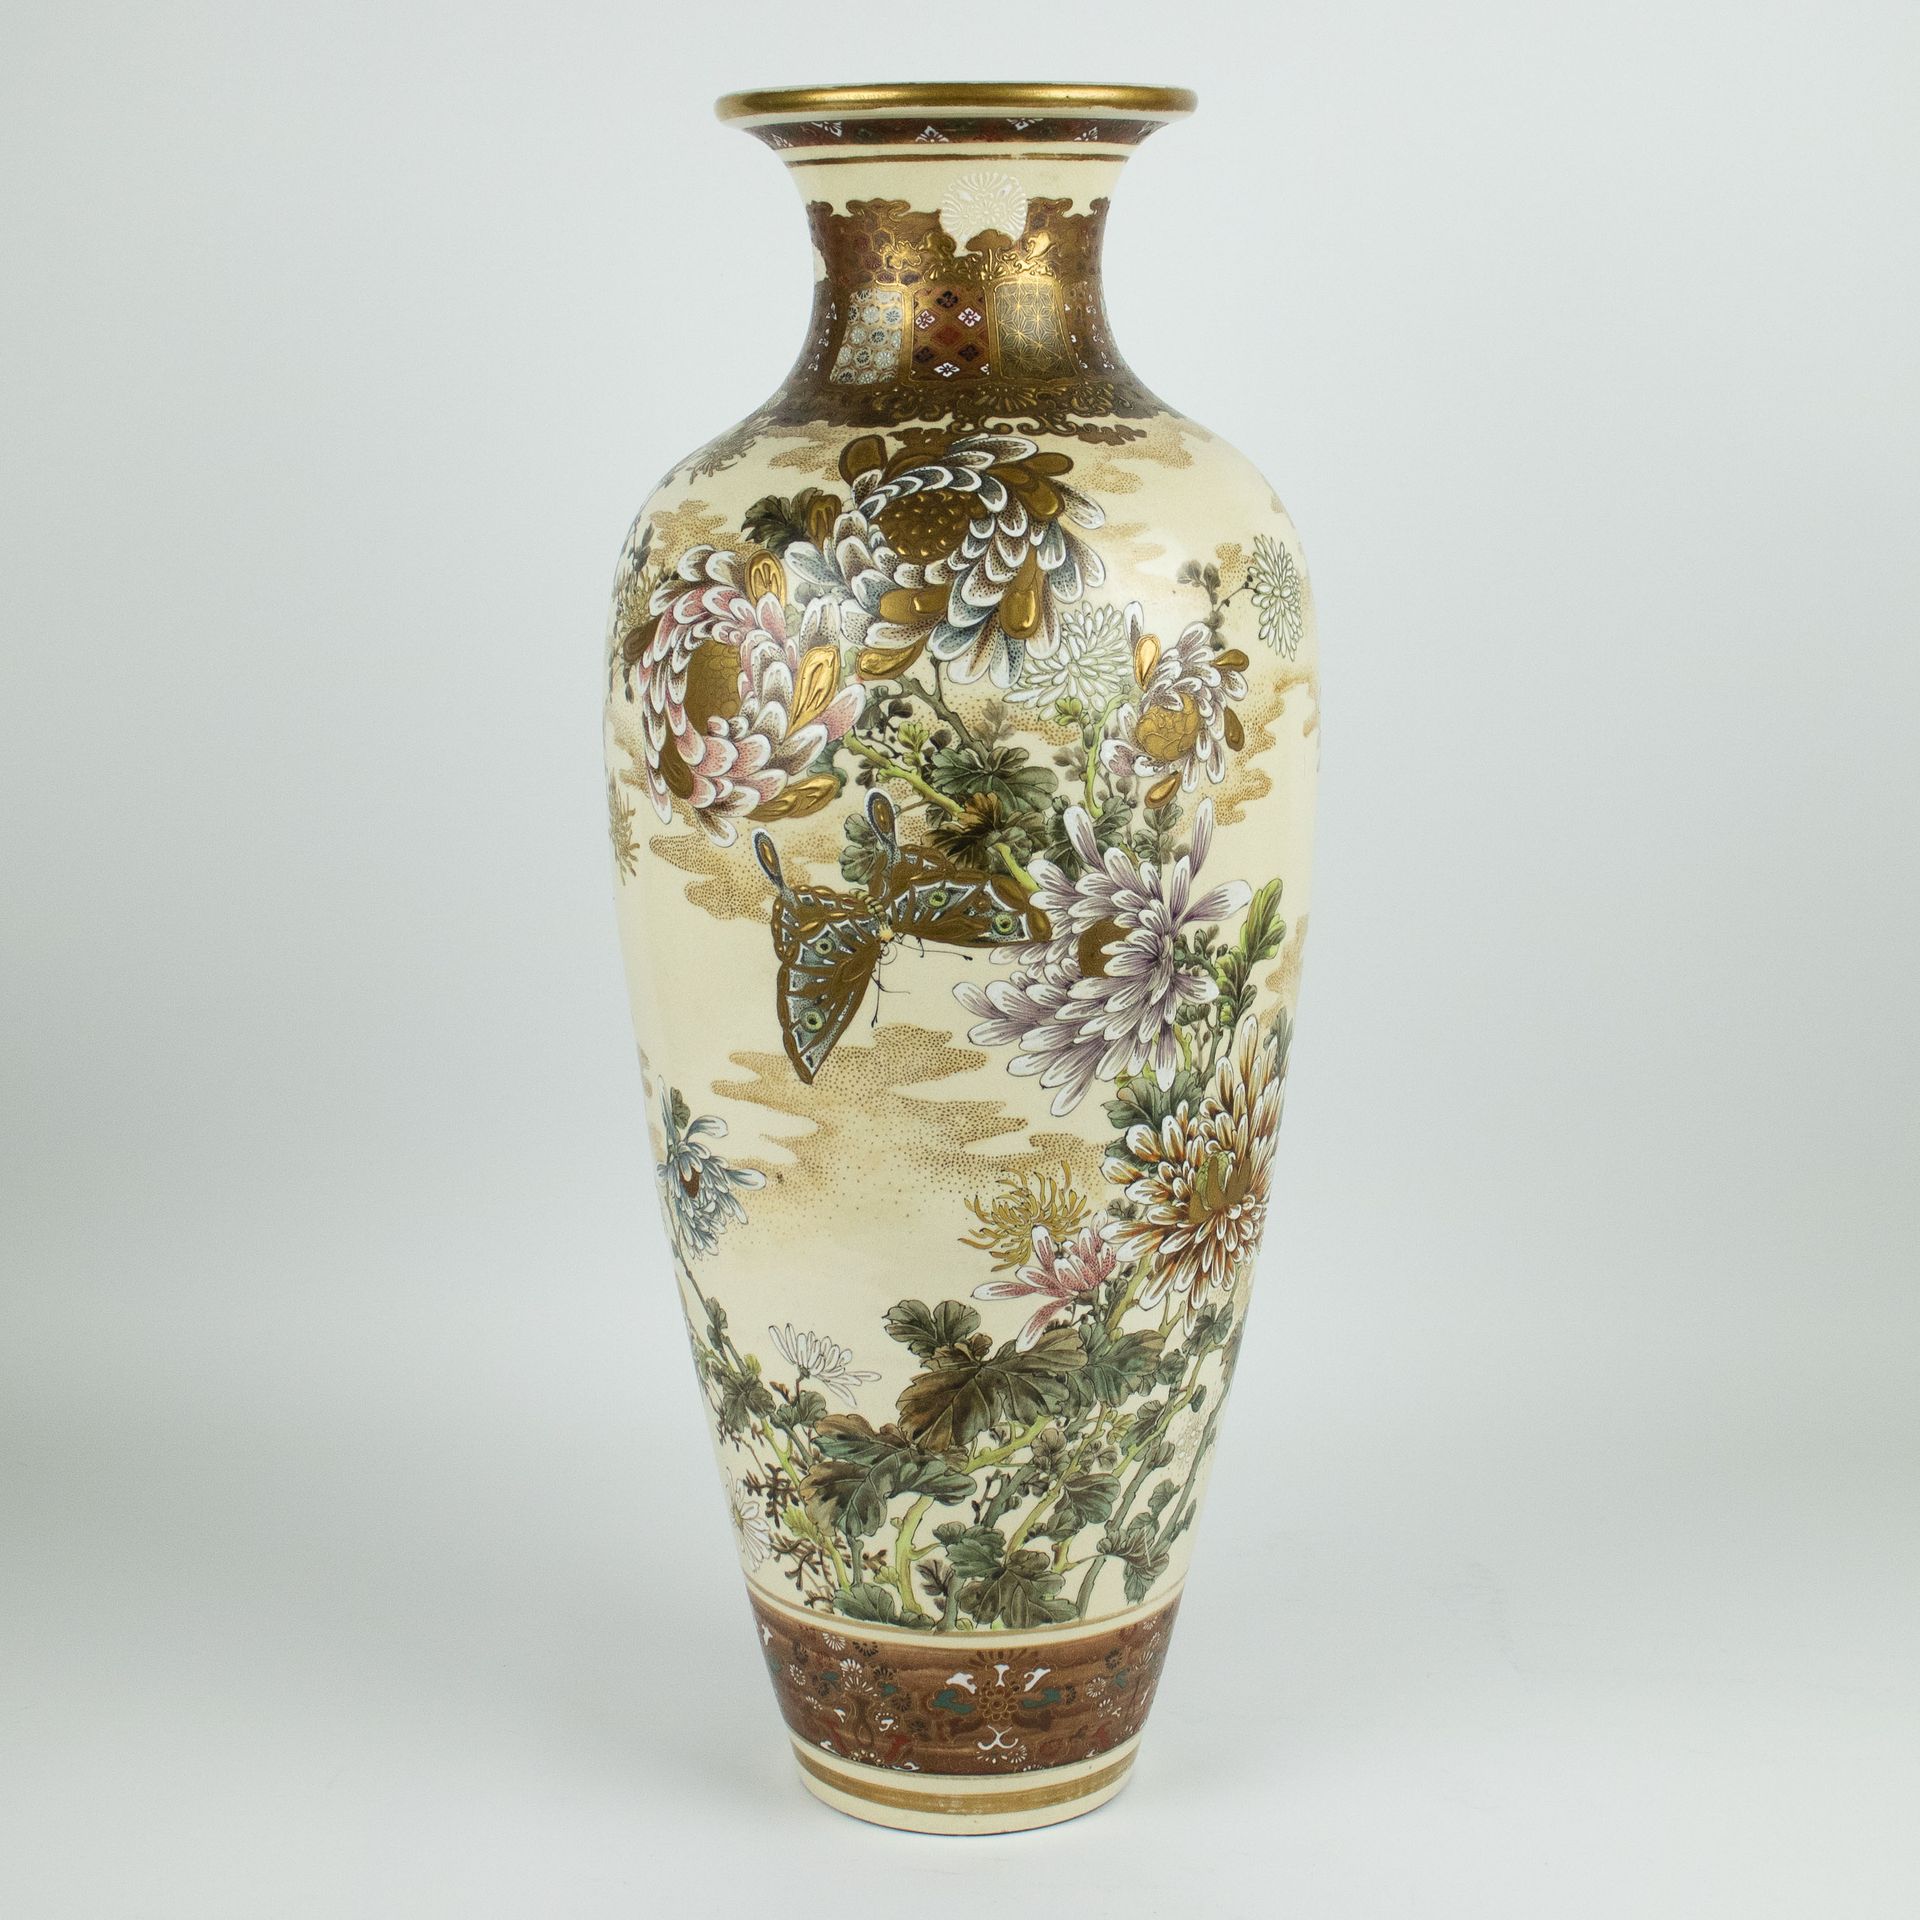 A Japanese Satsuma vase 装饰菊花，玉兰花，蝴蝶和花朵。
高59厘米，装饰菊花、玉兰花、蝴蝶和花朵。